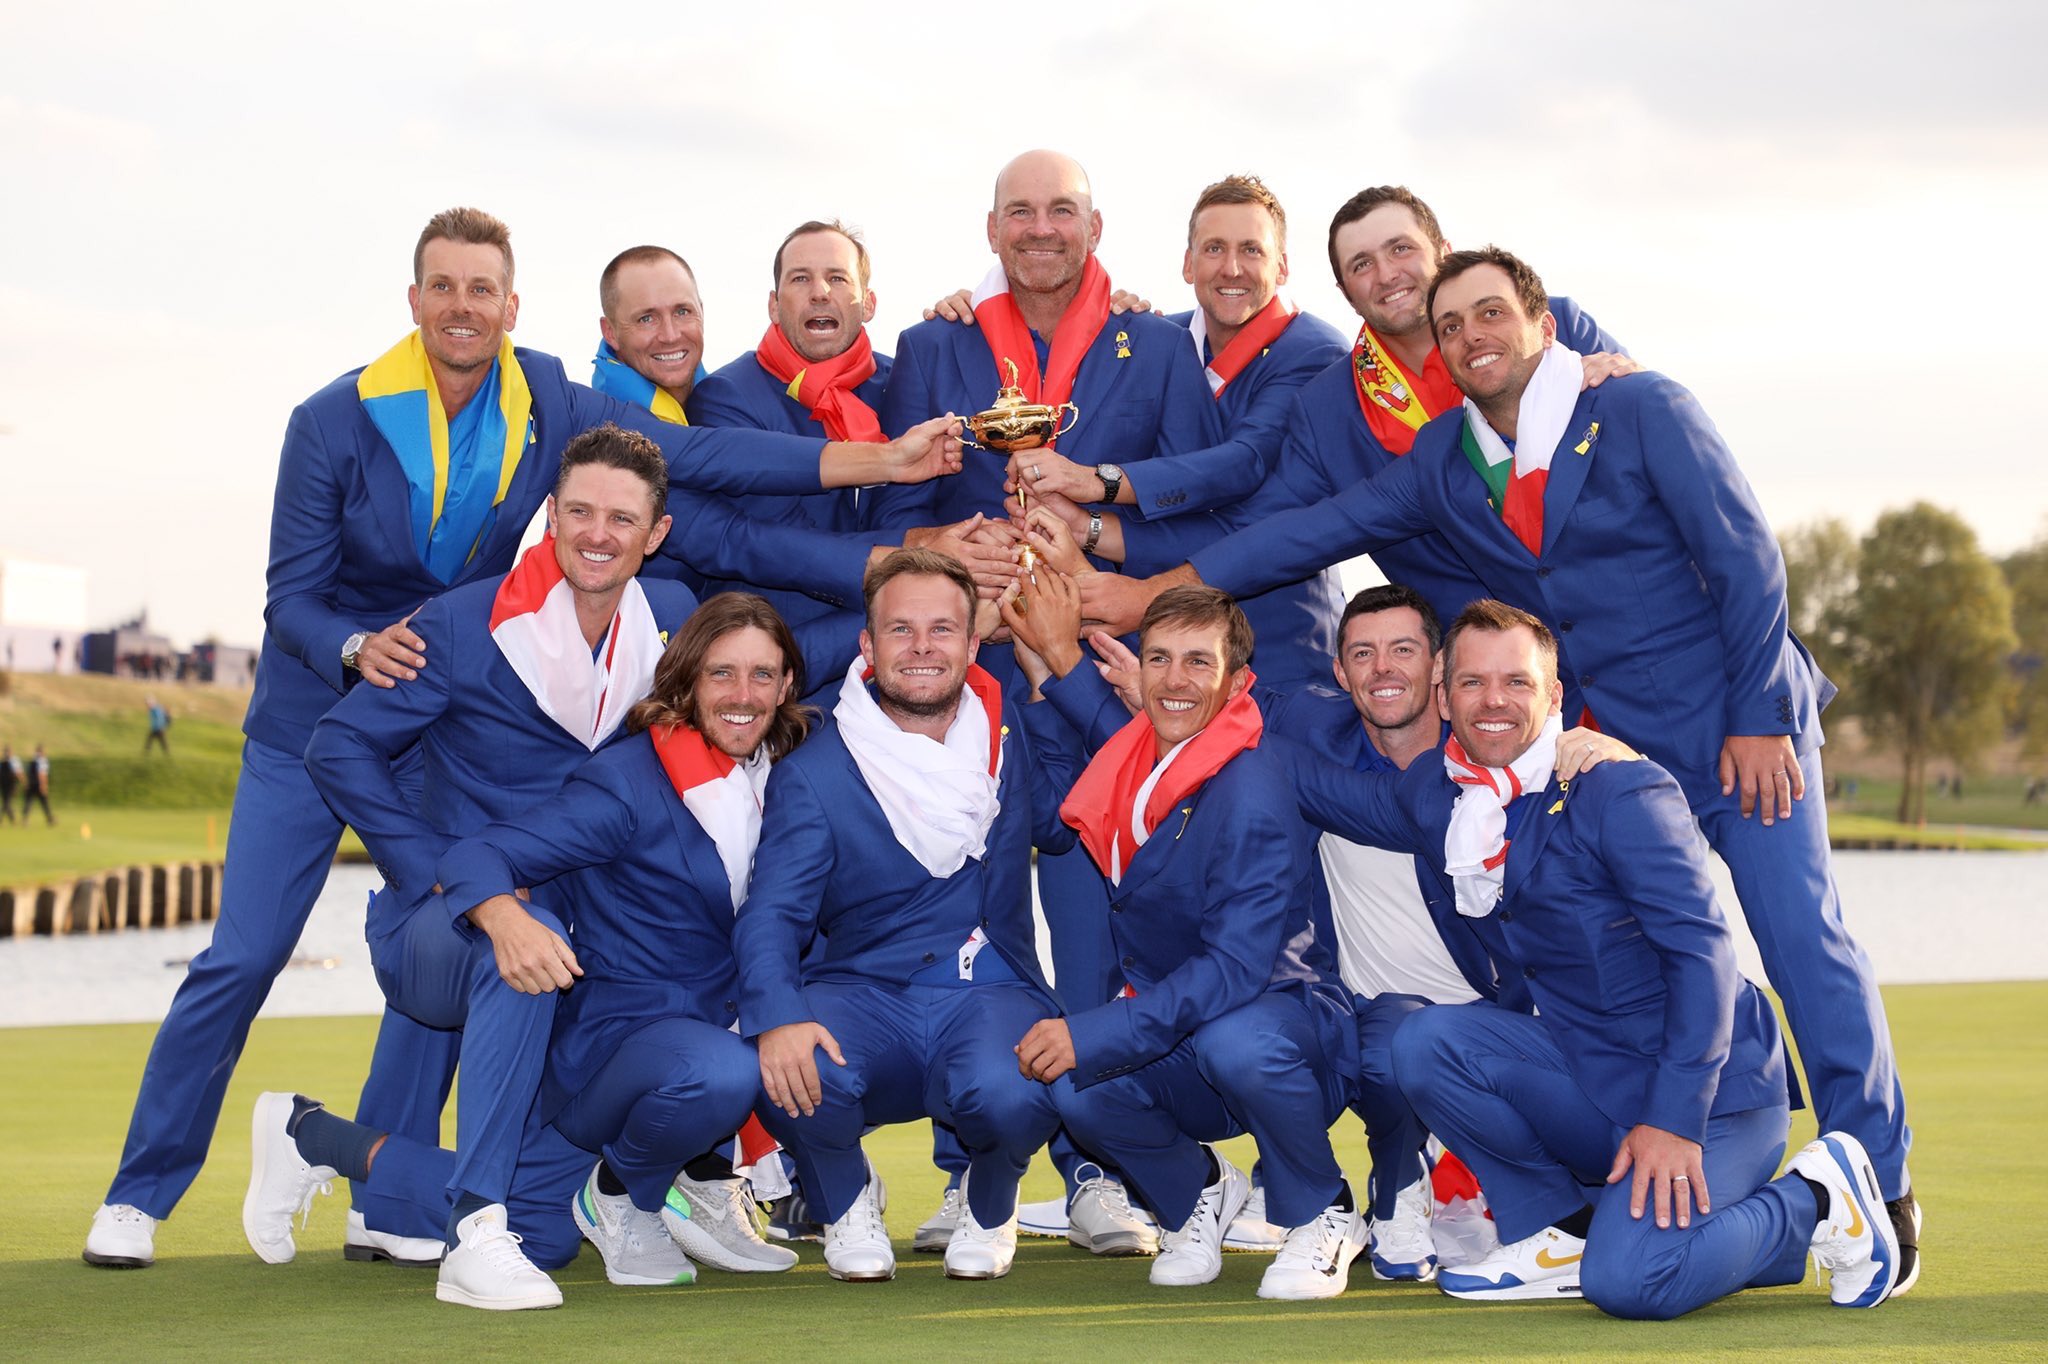 Tuyển châu Âu thắng Ryder Cup 2018 với tỷ số áp đảo 17,5-10,5